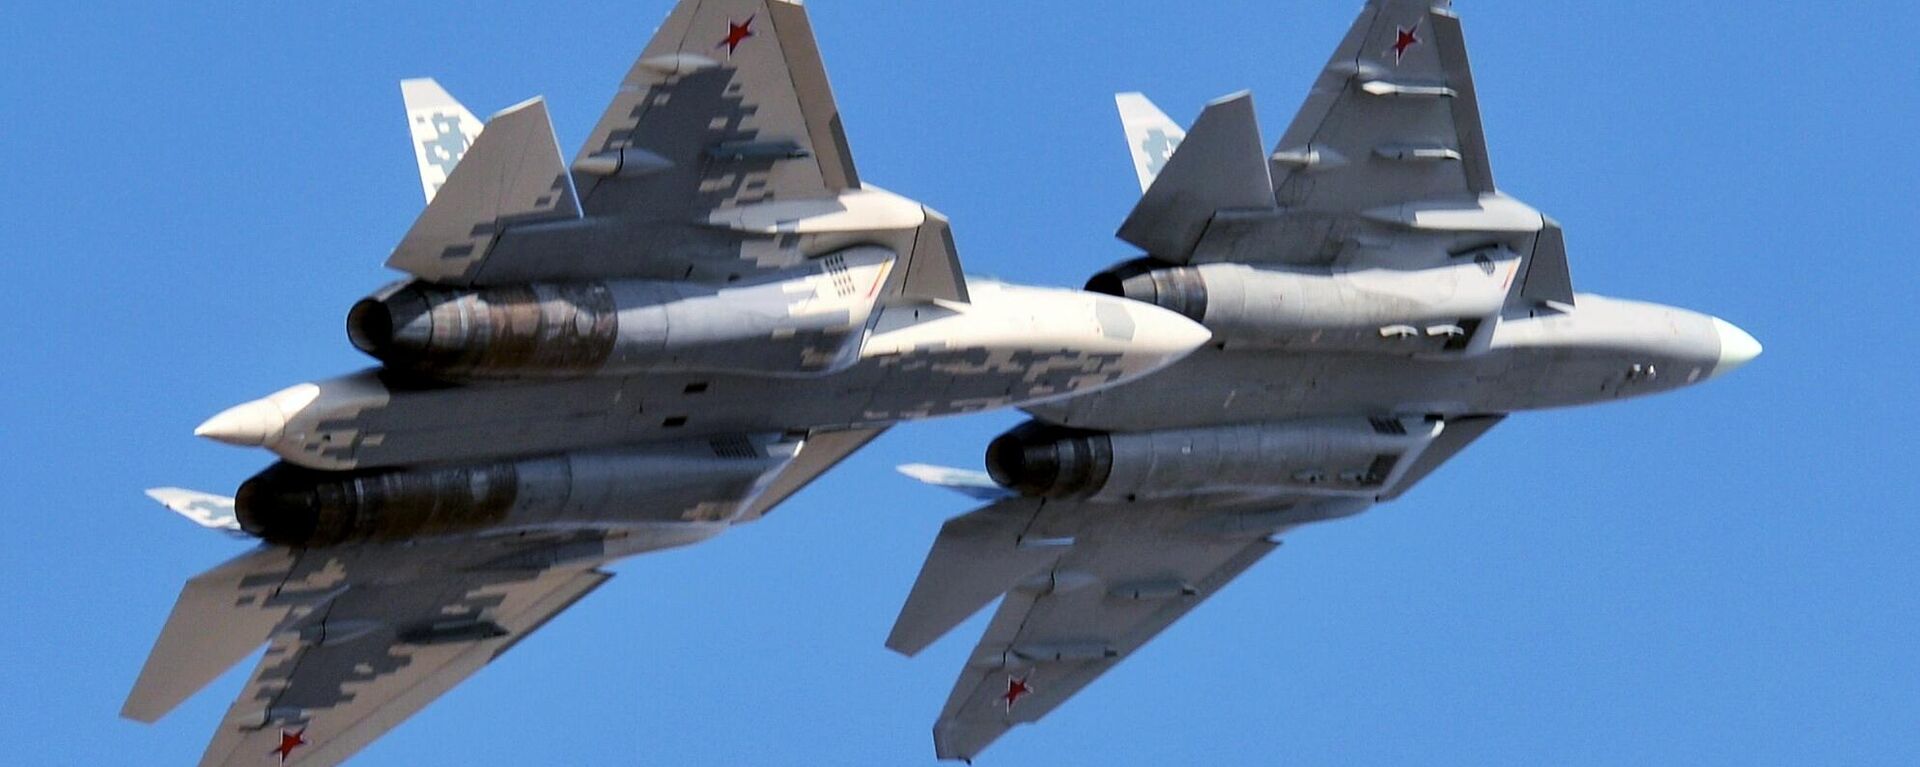 Dos cazas Su-57 de las Fuerzas Aeroespaciales de Rusia - Sputnik Mundo, 1920, 21.04.2021